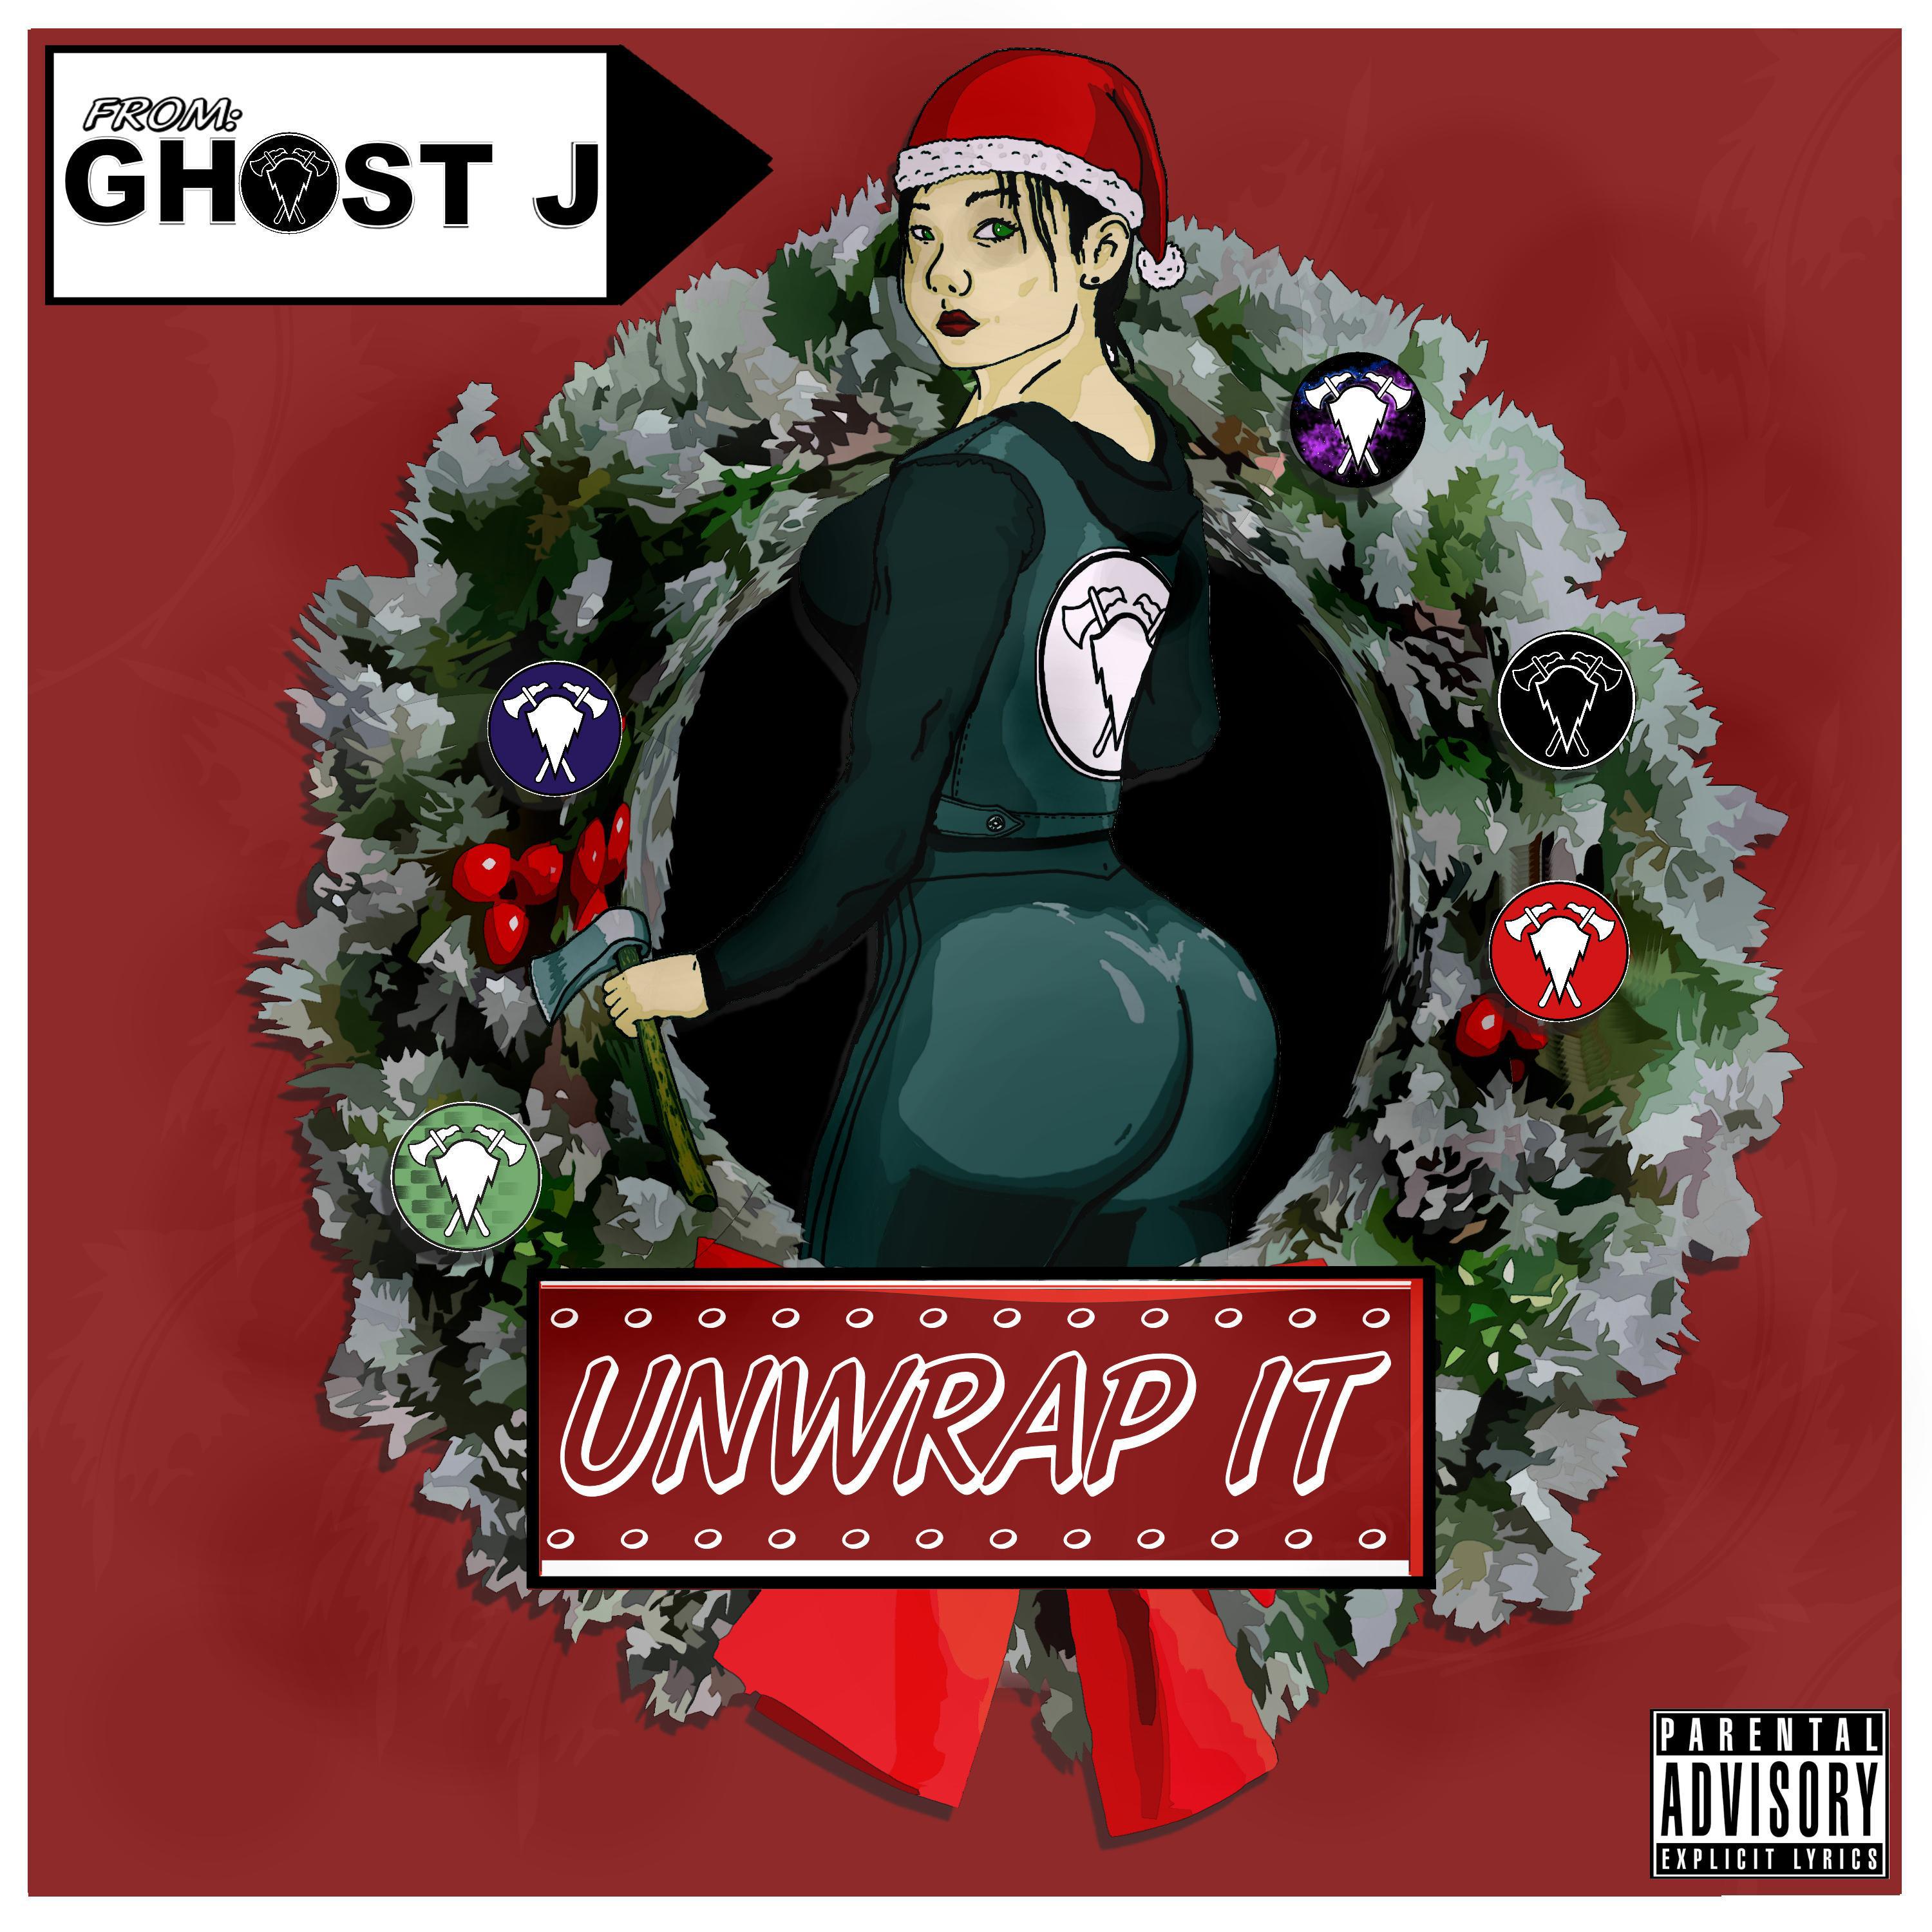 Ghost J - Unwrap It